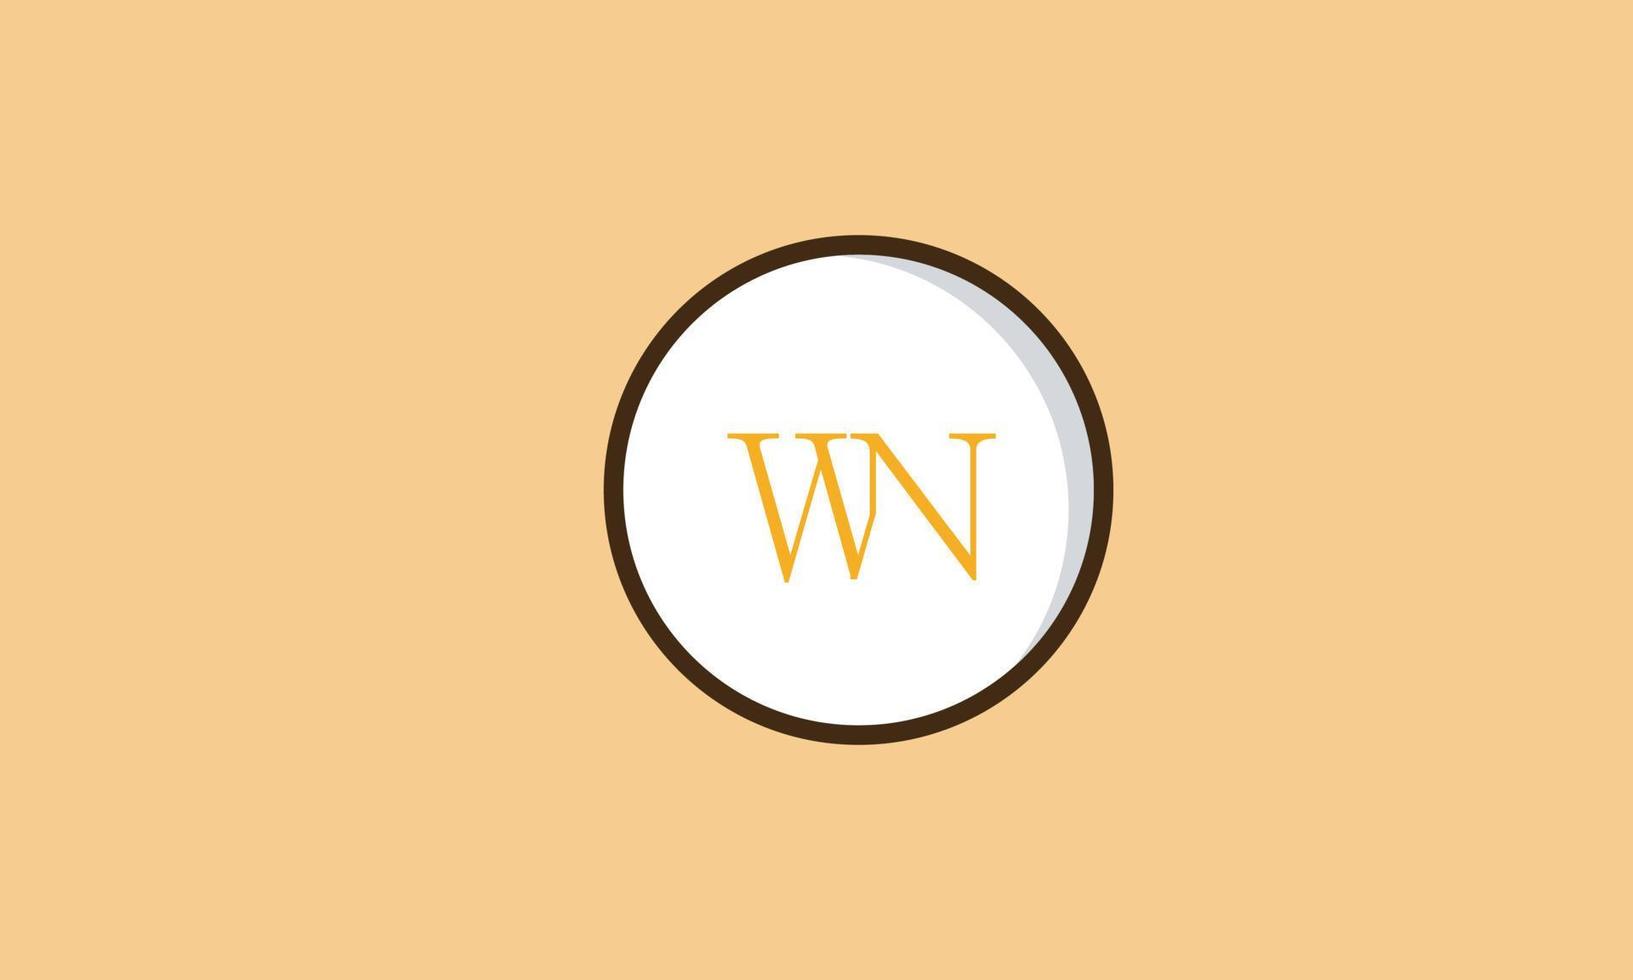 letras del alfabeto iniciales monograma logo wn, nw, w y n vector